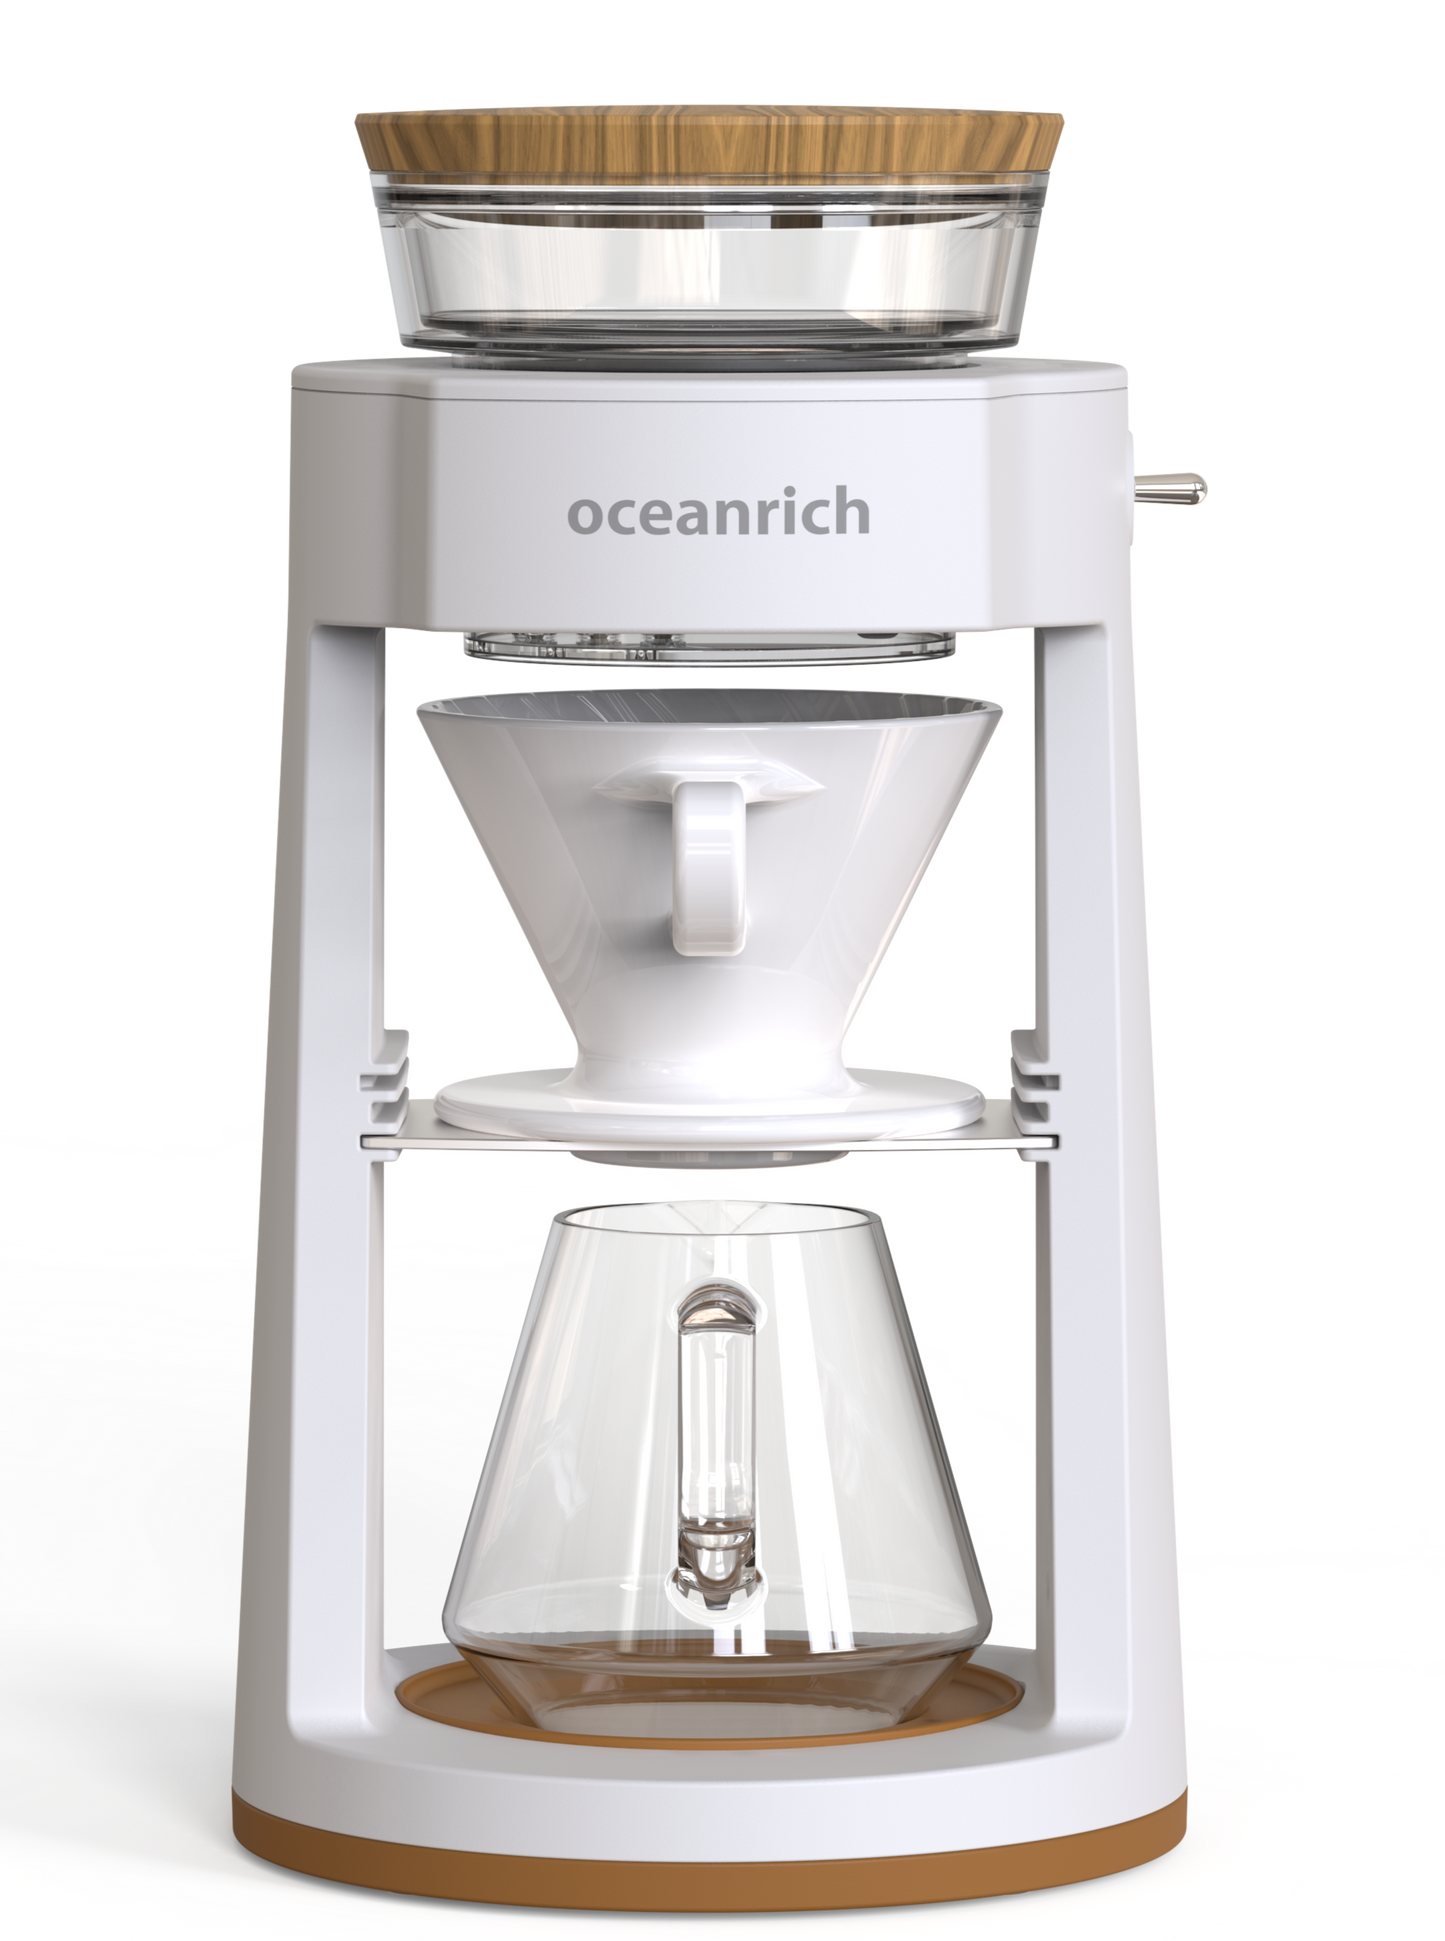 أحصل على جهاز القهوة المقطرة أداة التقطير الذاتية من أوشن ريتش oceanrich واستمتع بأفضل قهوة